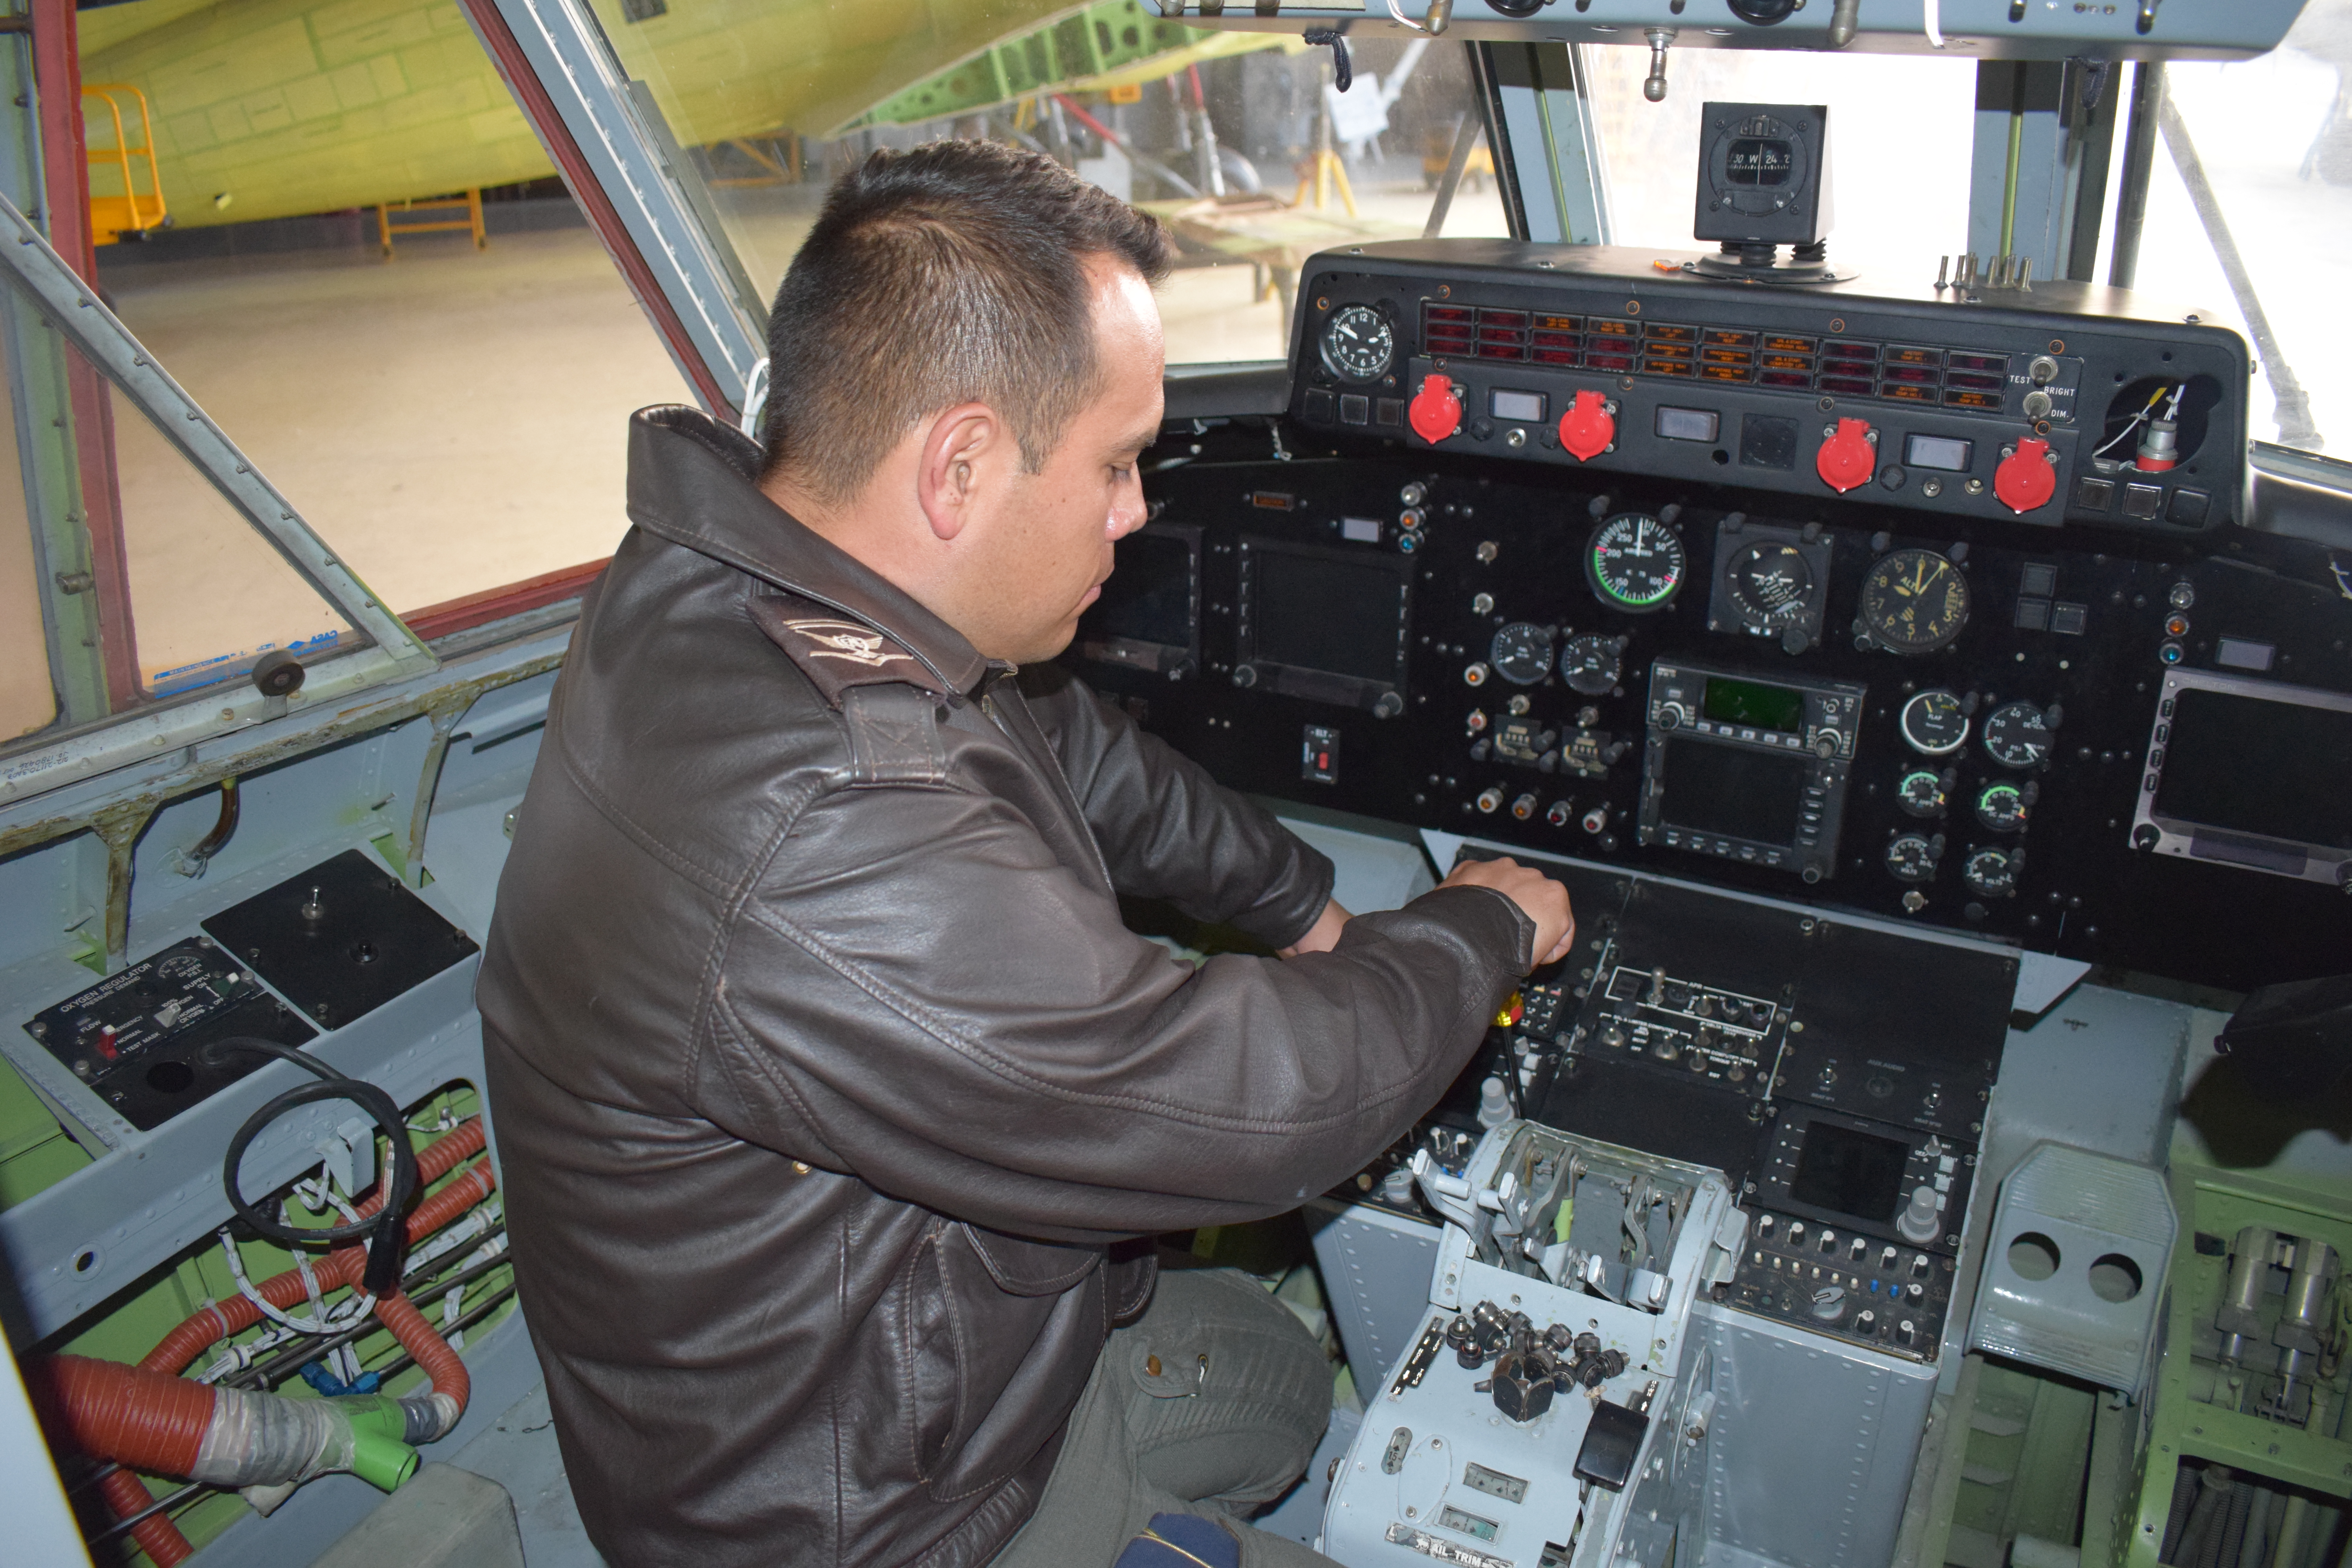  Actualización de Cabina una iniciativa del Comando Aéreo de Mantenimiento